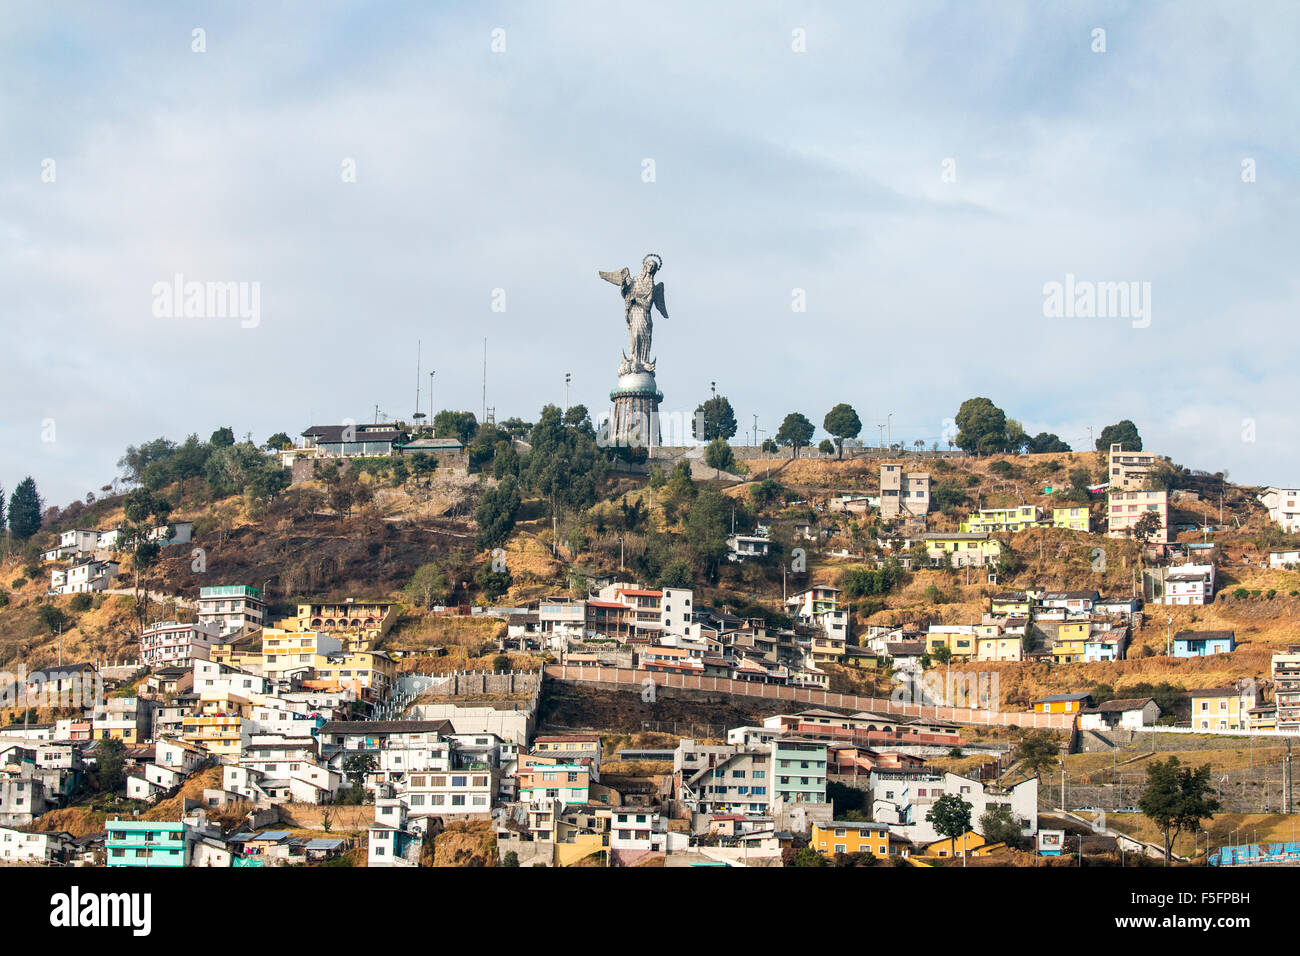 Situato sulla parte superiore del Cerro El Panecillo, questa imponente scultura può essere visto da qualsiasi posizione nel centro cittadino di Quito. Foto Stock